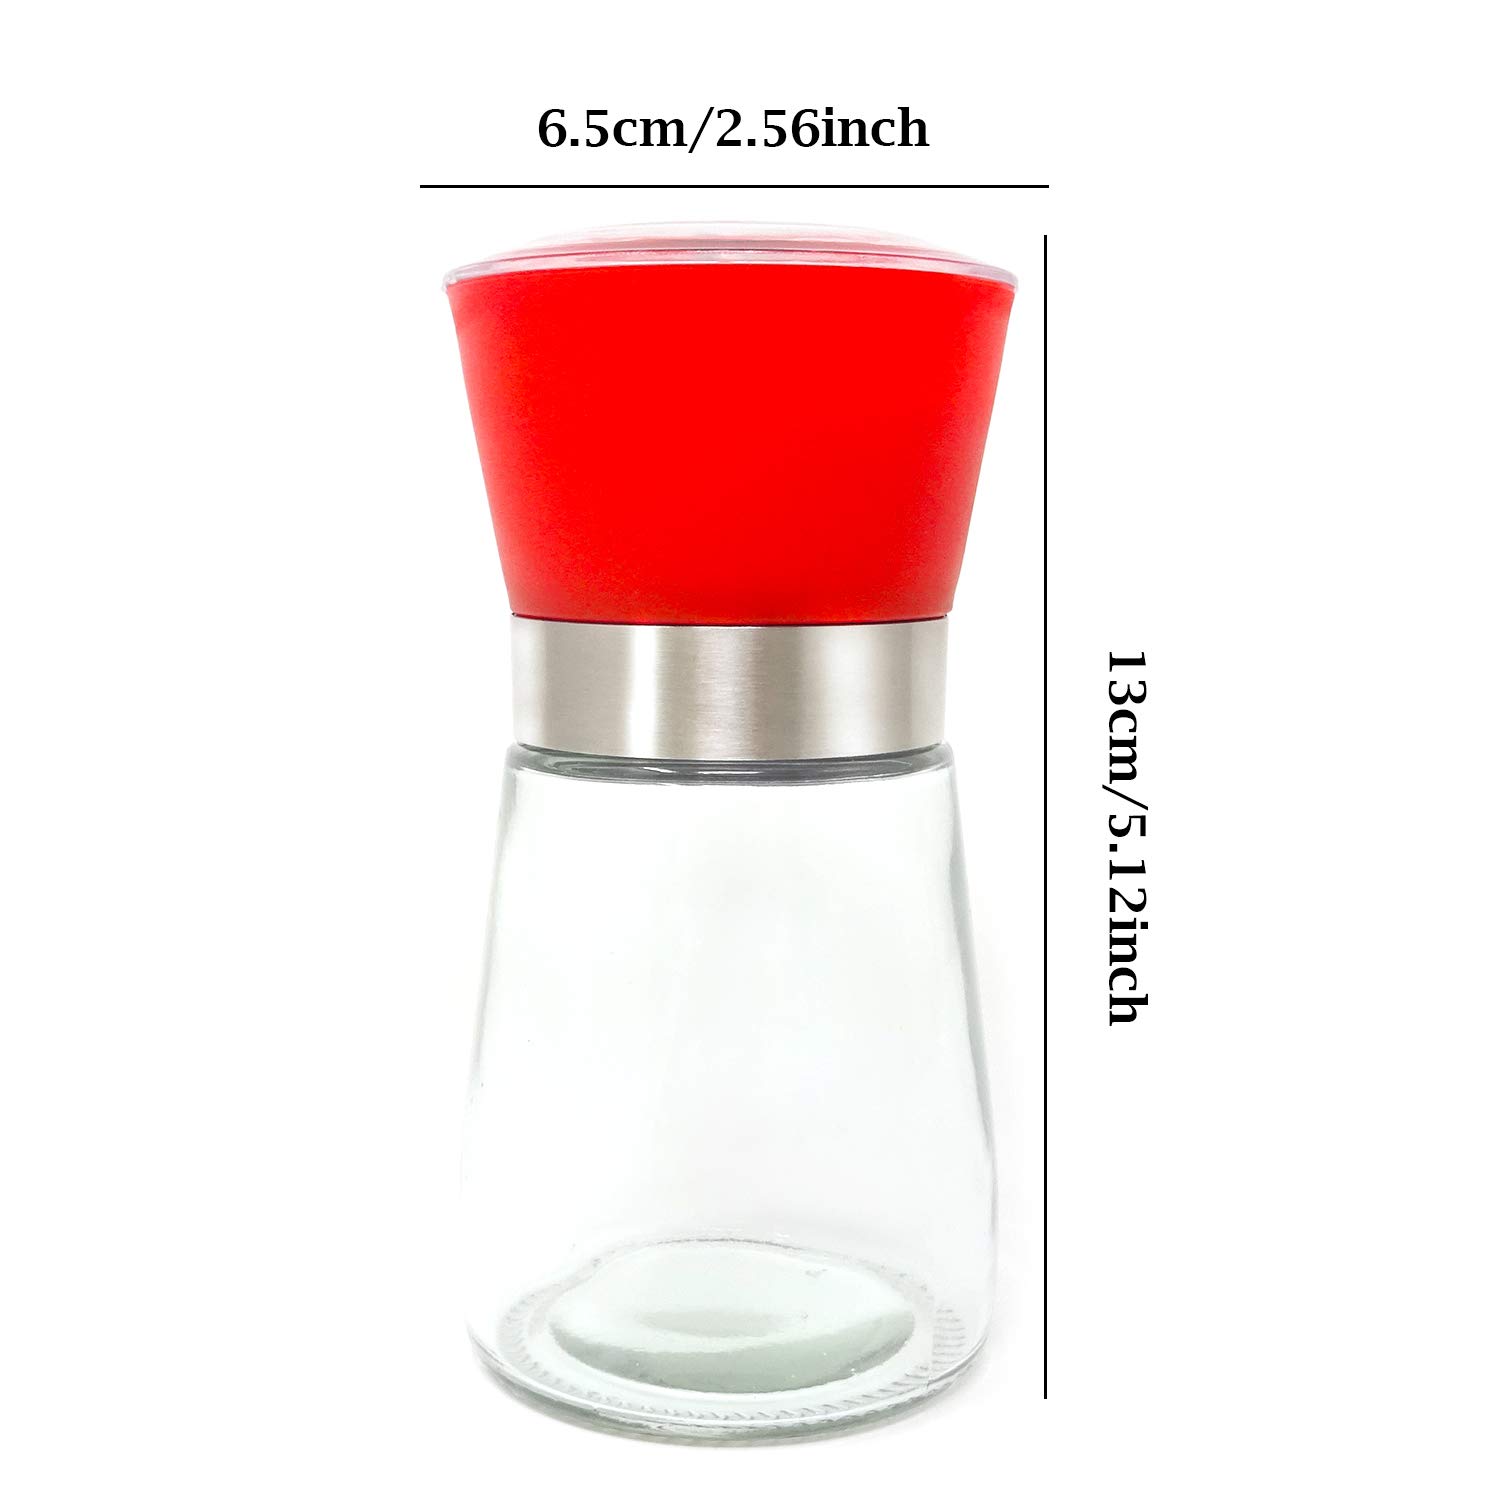 Honbay 1PCS Premium Red Home High Grips Manual Salt or Pepper Grinder Mill Shakers Grinder Jar for Kitchen